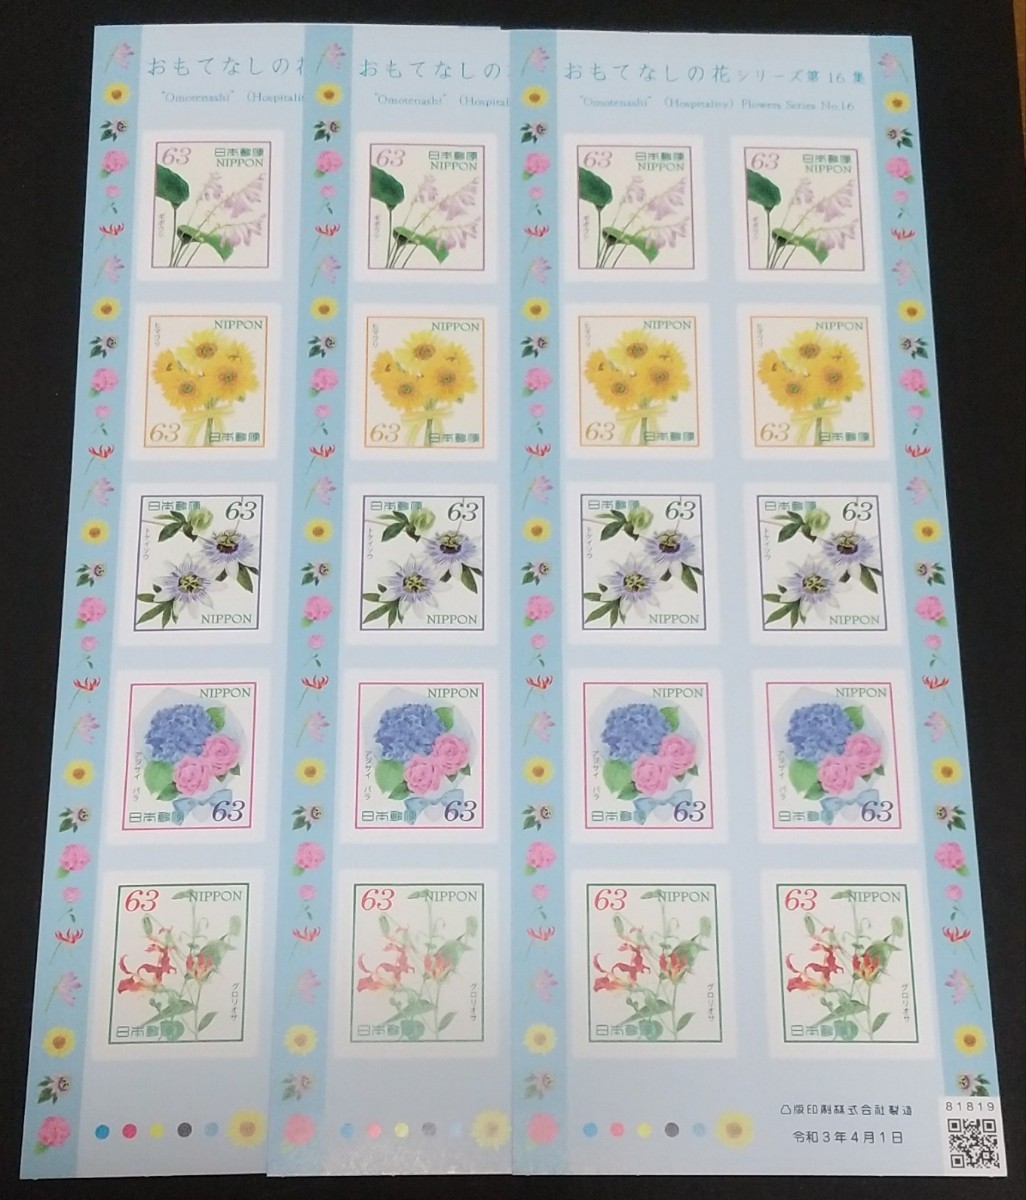 おもてなしの花シリーズ第16集 63円 シール切手 3シート 1890円分  シール式切手 記念切手